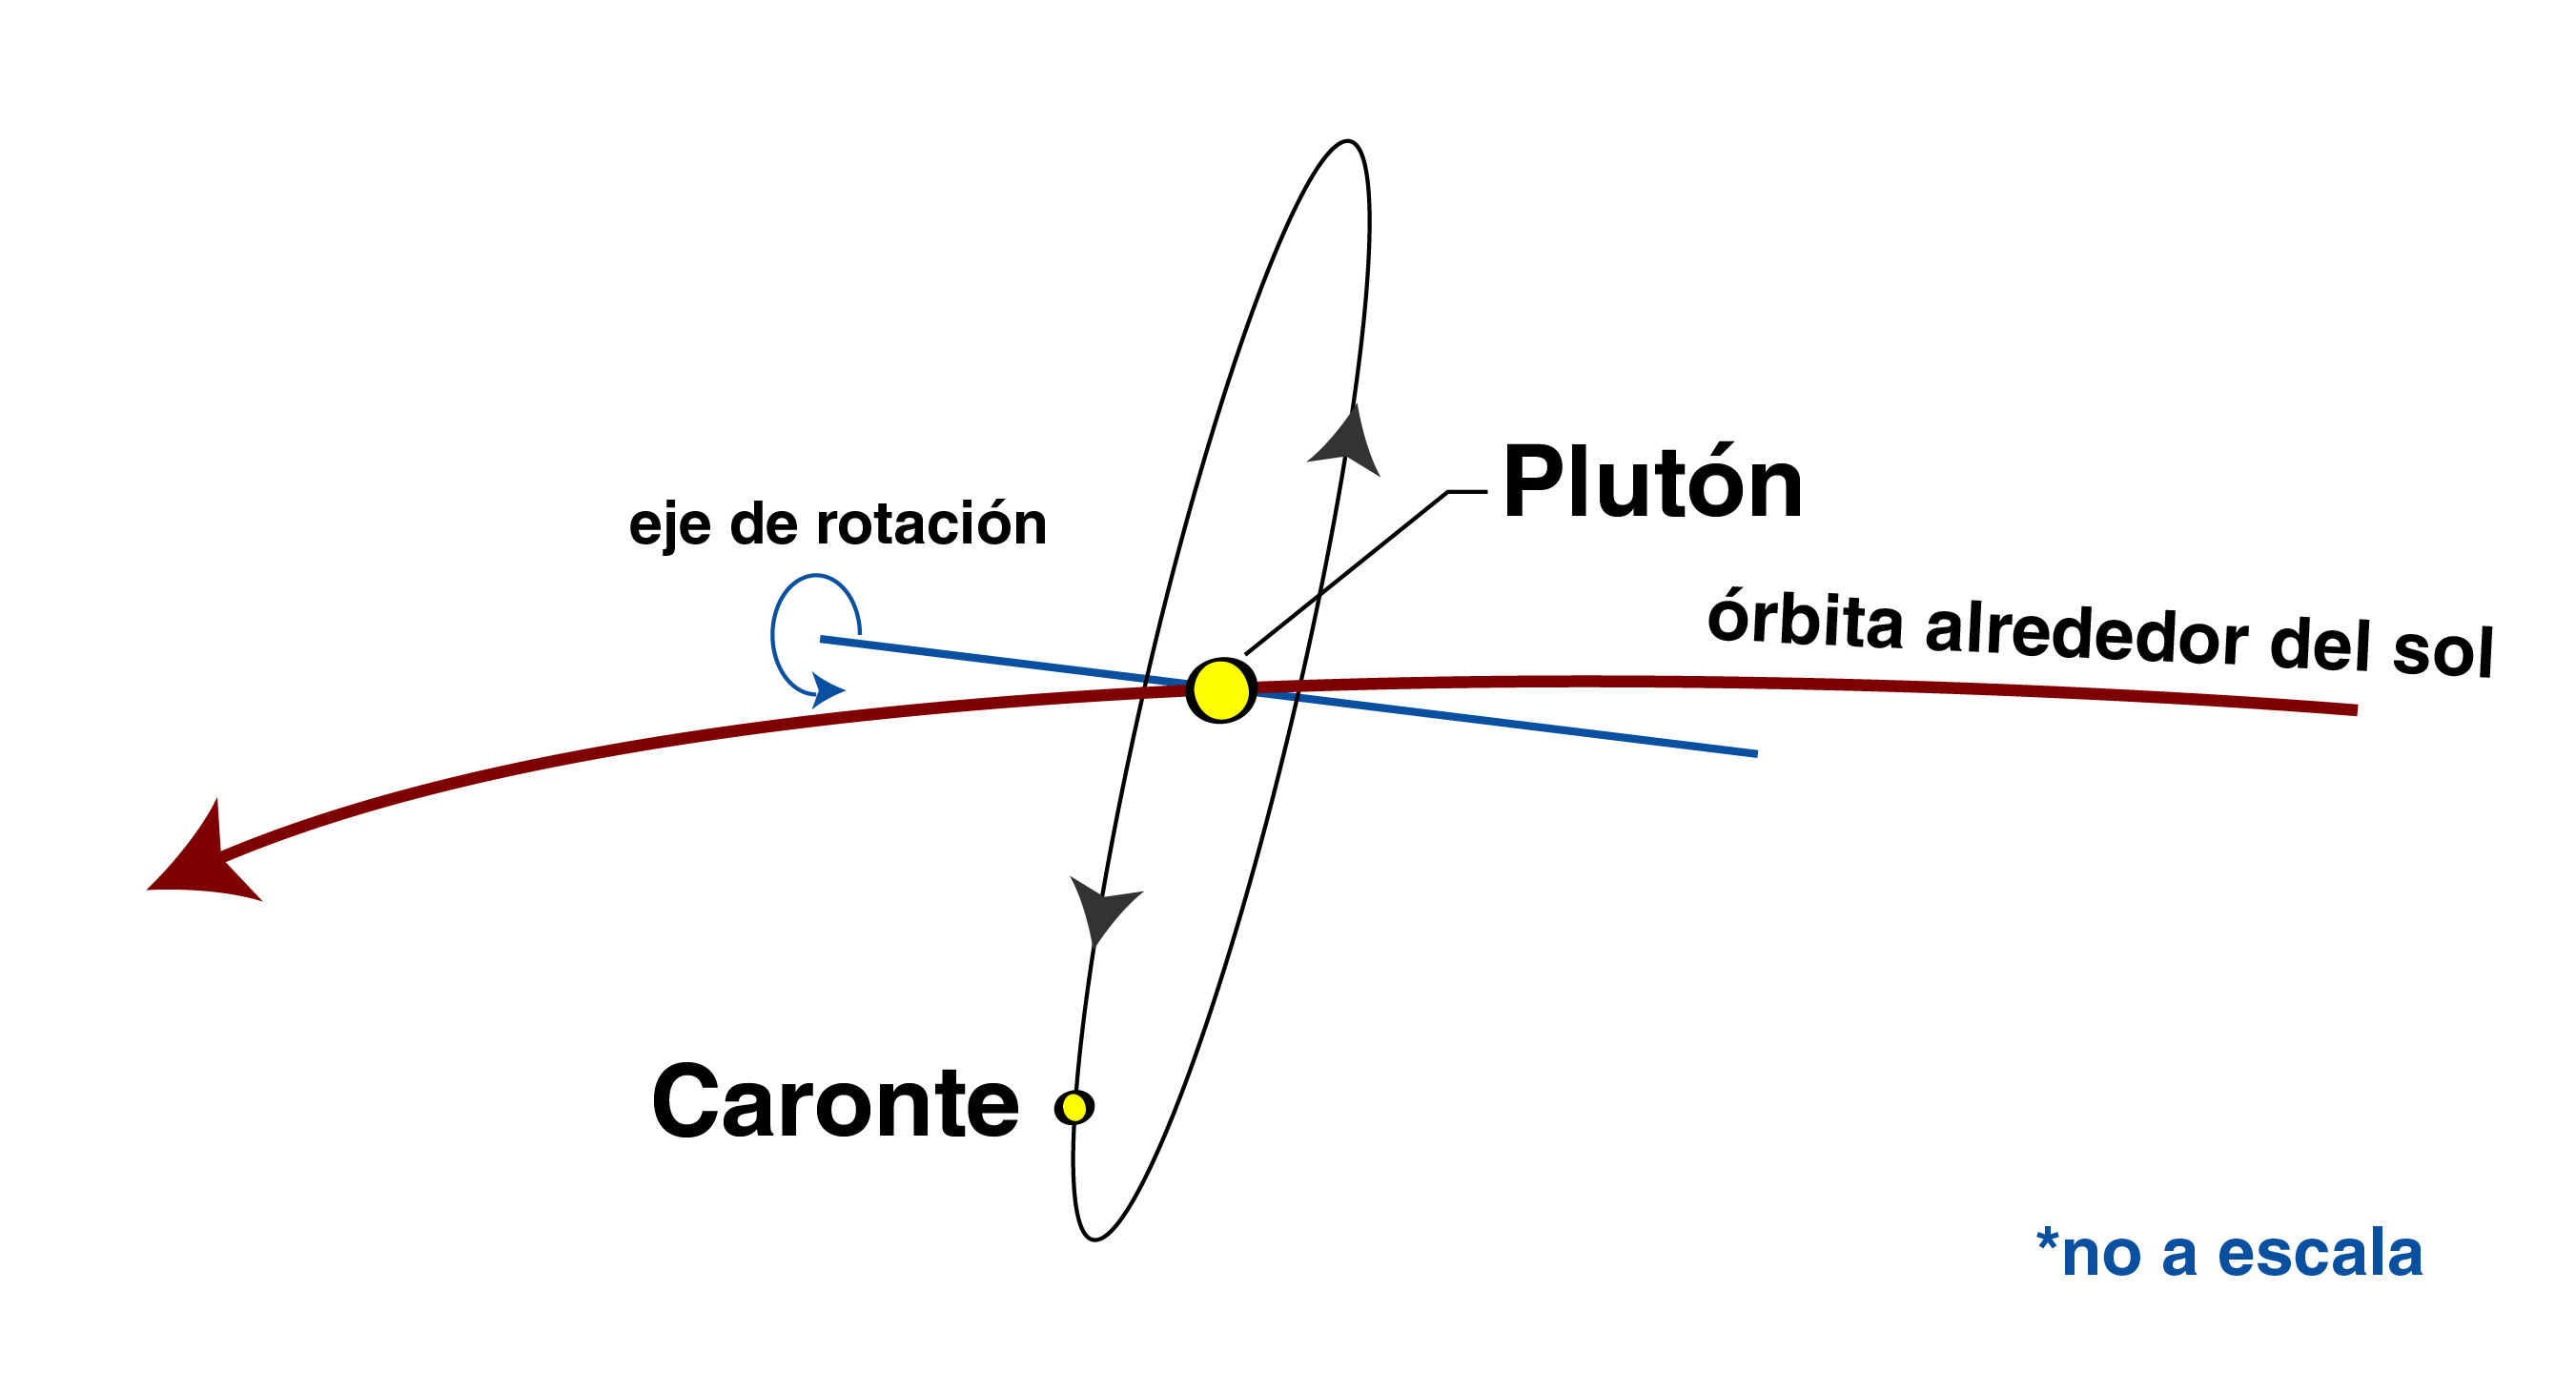 Orientación de las órbitas Plutón-Caronte.